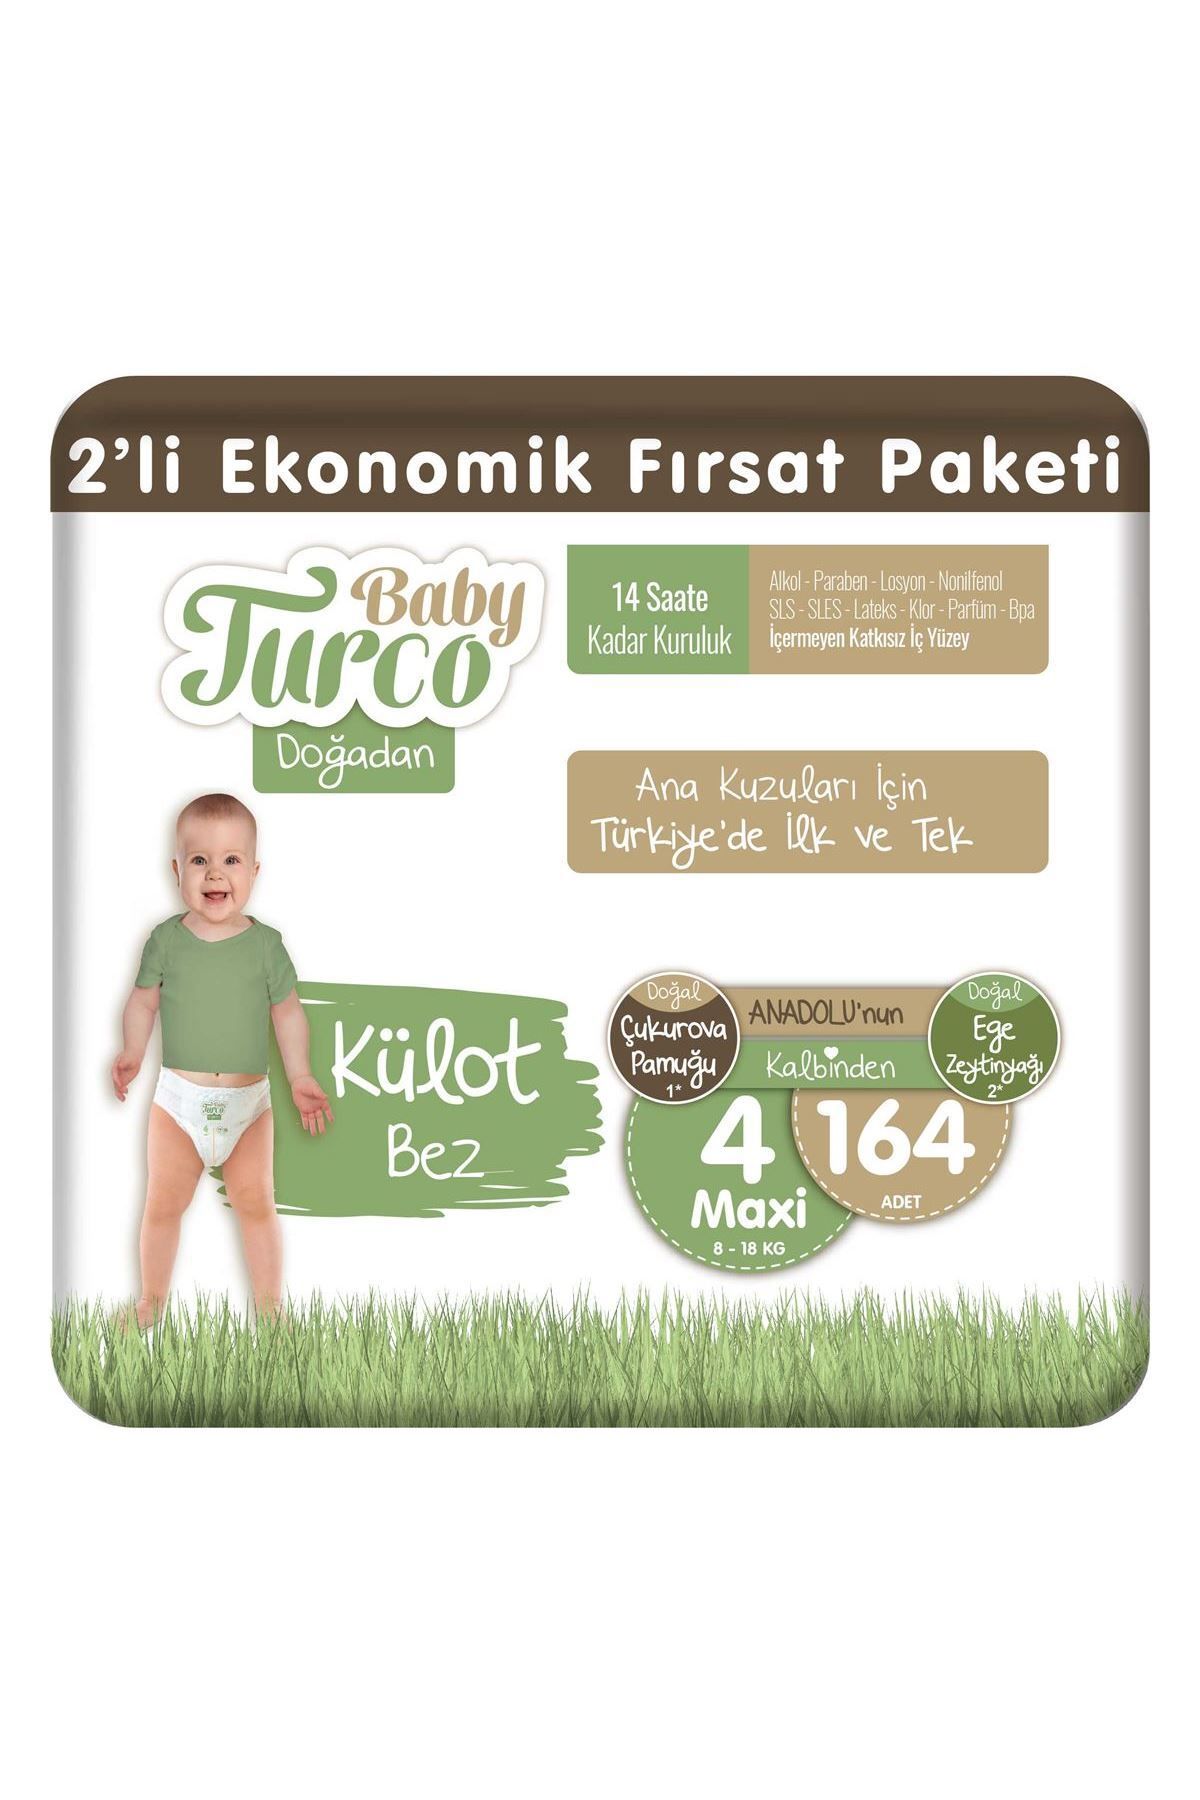 Baby Turco Doğadan 2'Li Ekonomik Fırsat Paketi Külot Bez 4 Numara Maxi 164 Adet